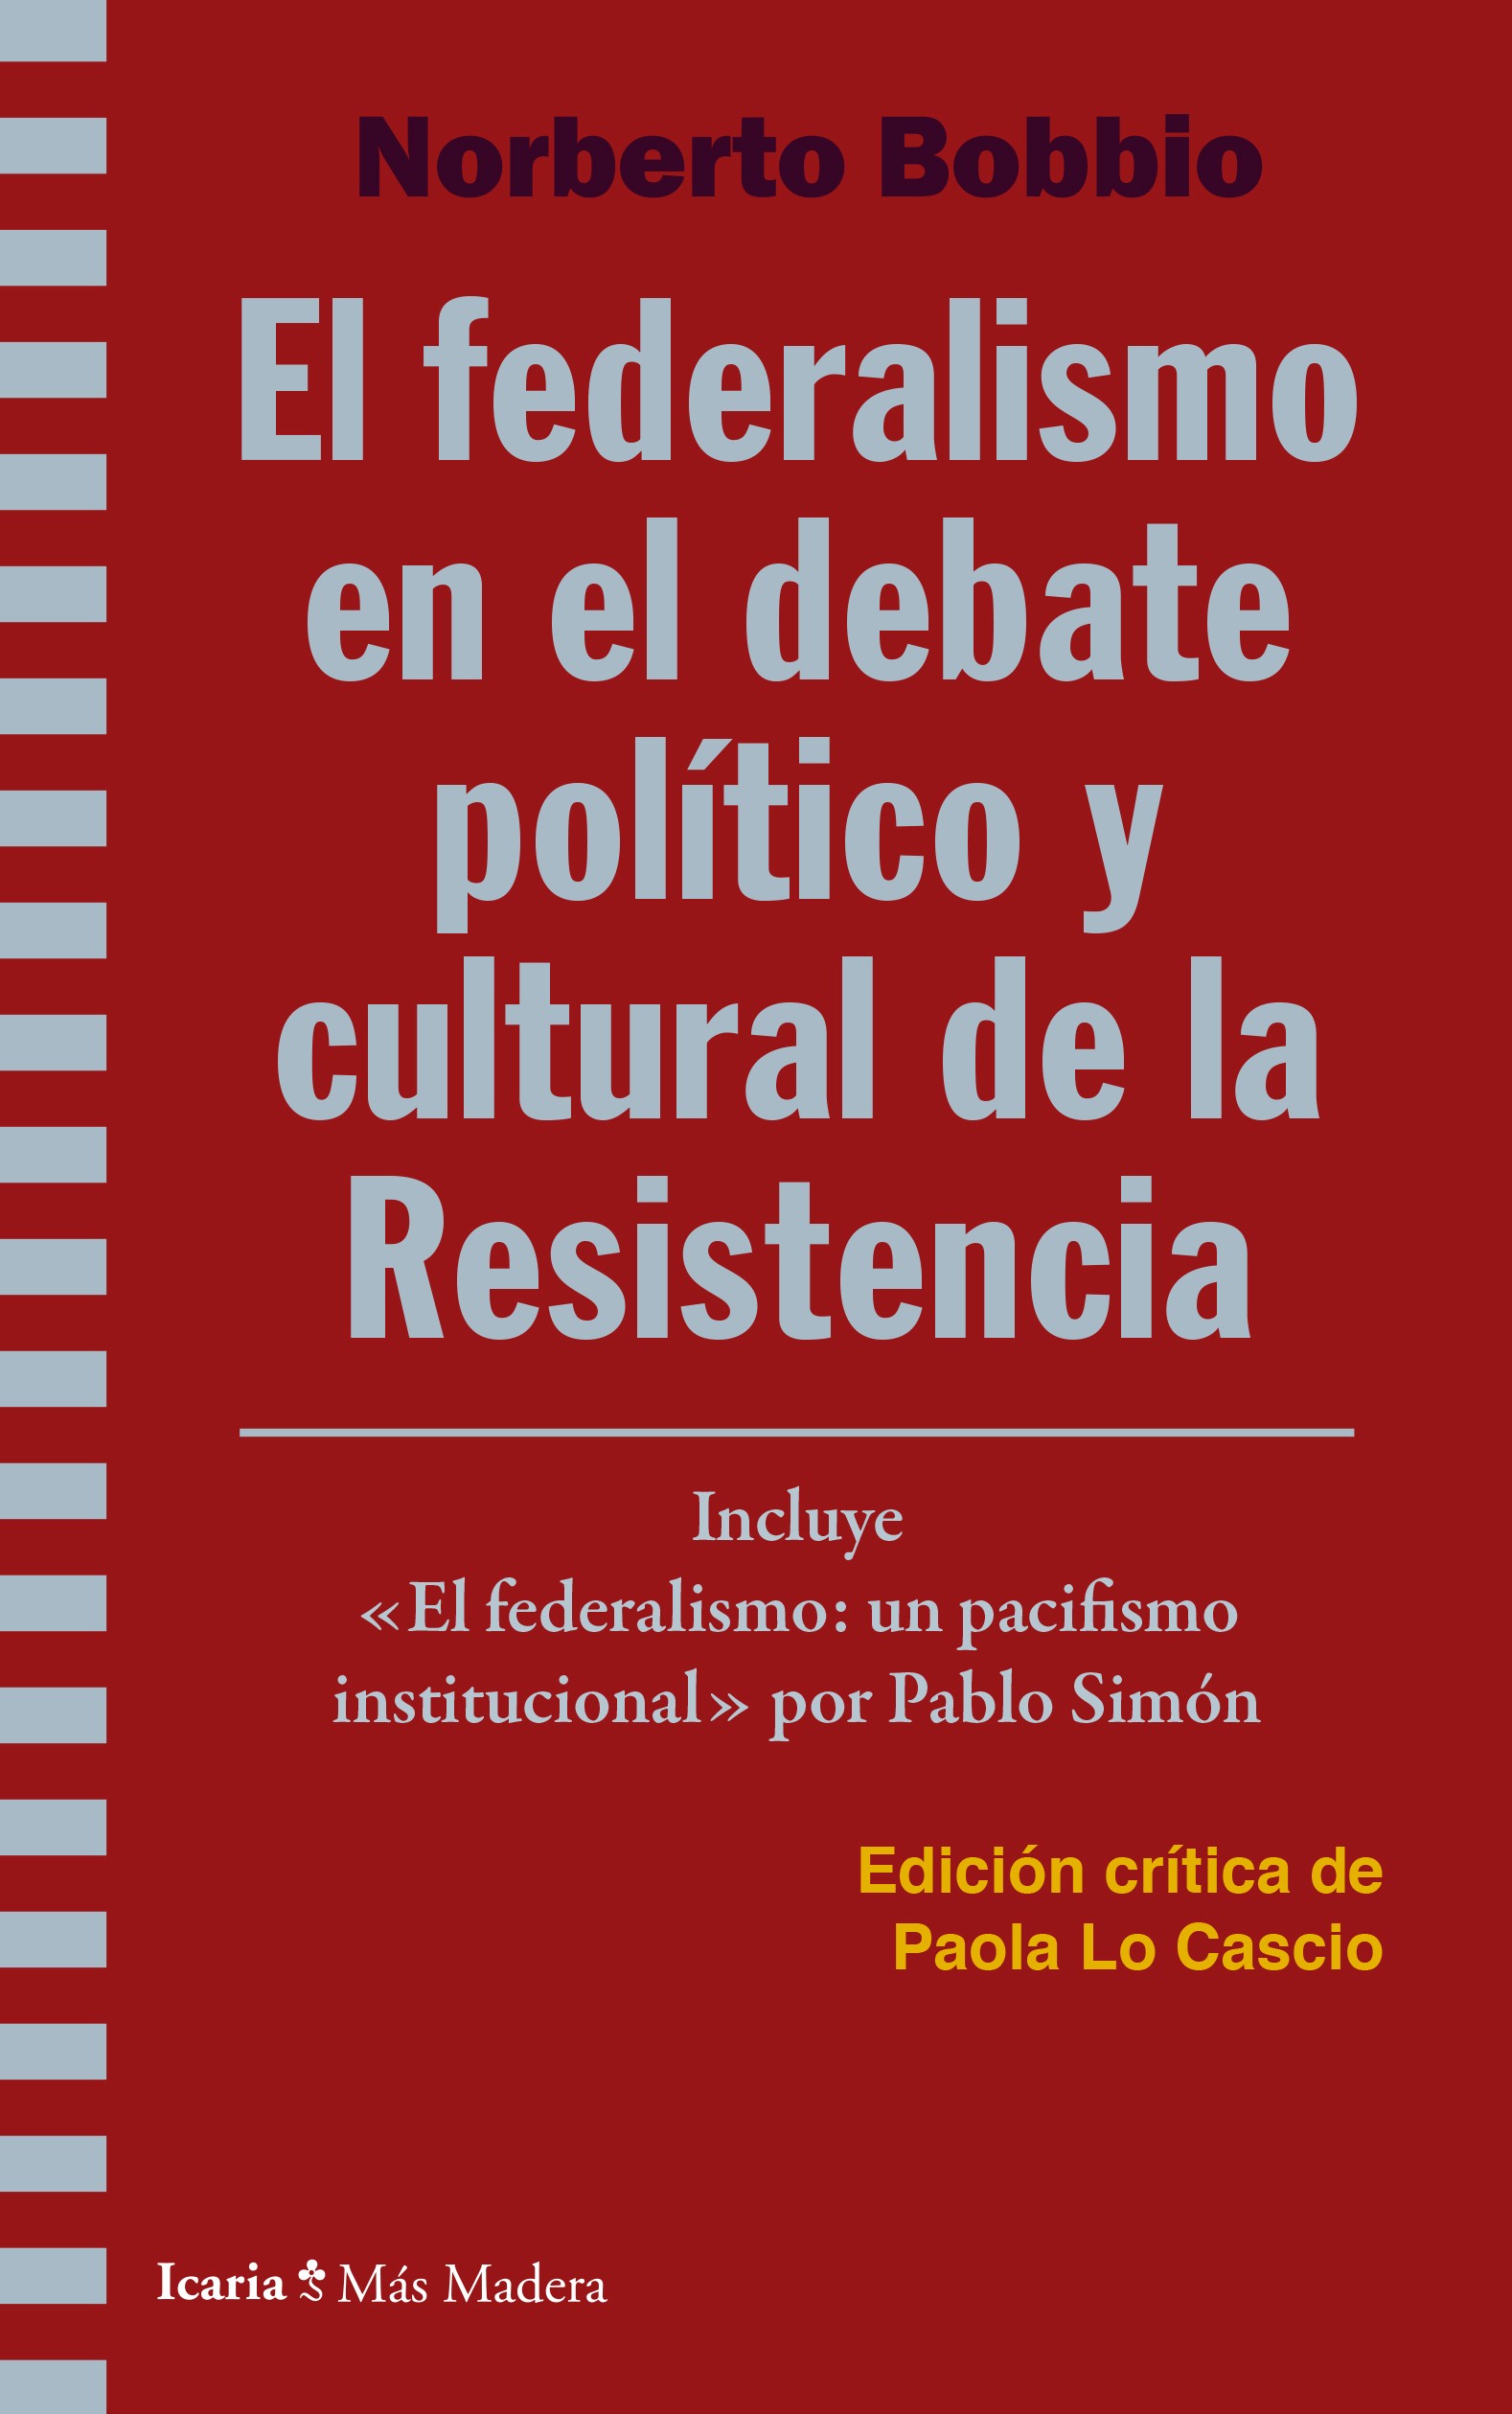 Imagen de portada del libro El federalismo en el debate político y cultural de la Resistencia